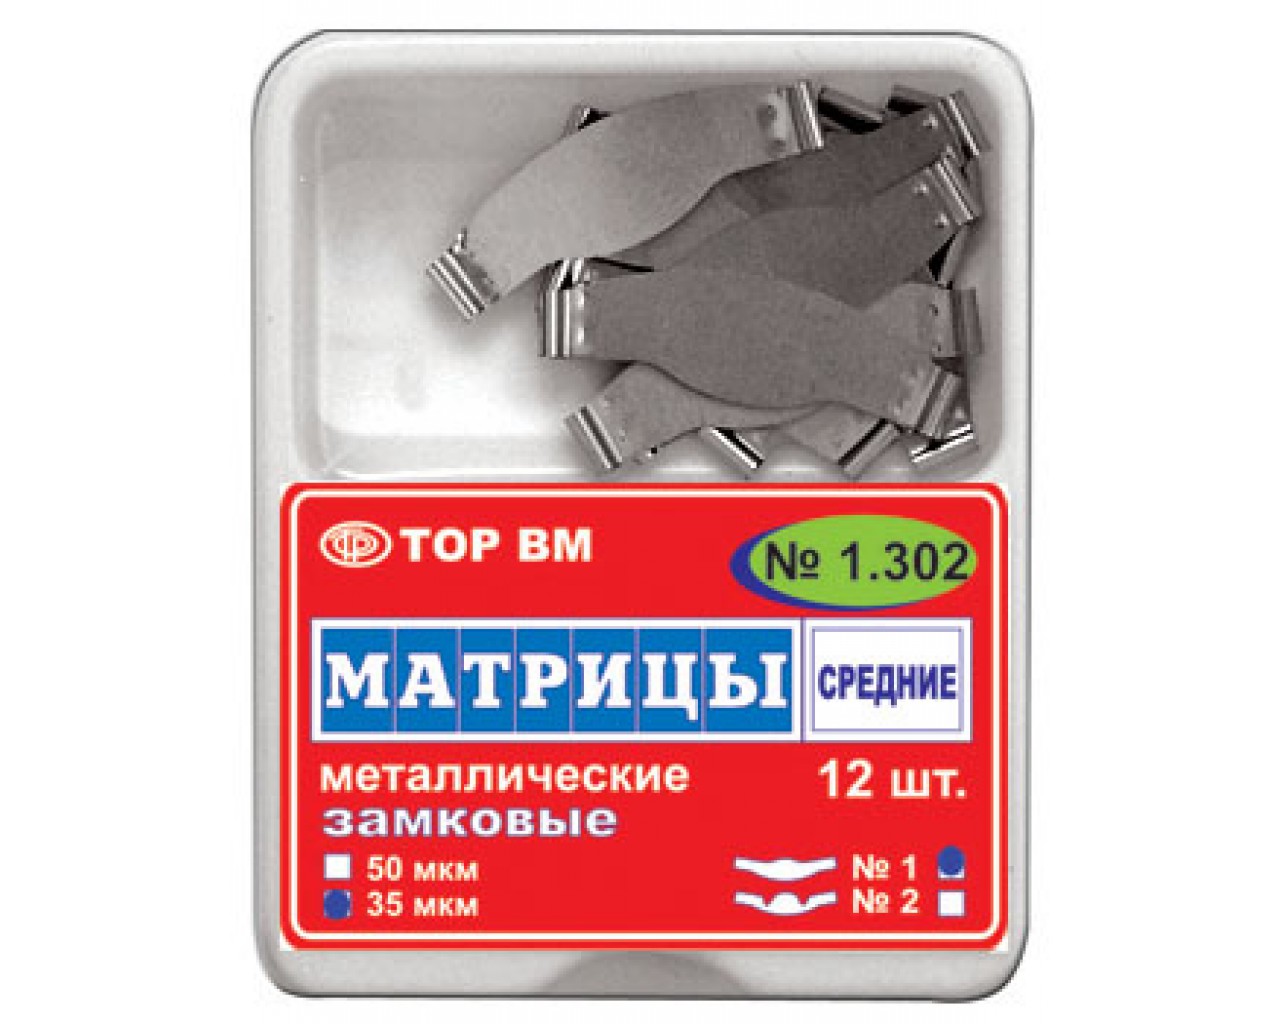 Матрицы металлические замковые №1.302 /1/ - 12 шт.